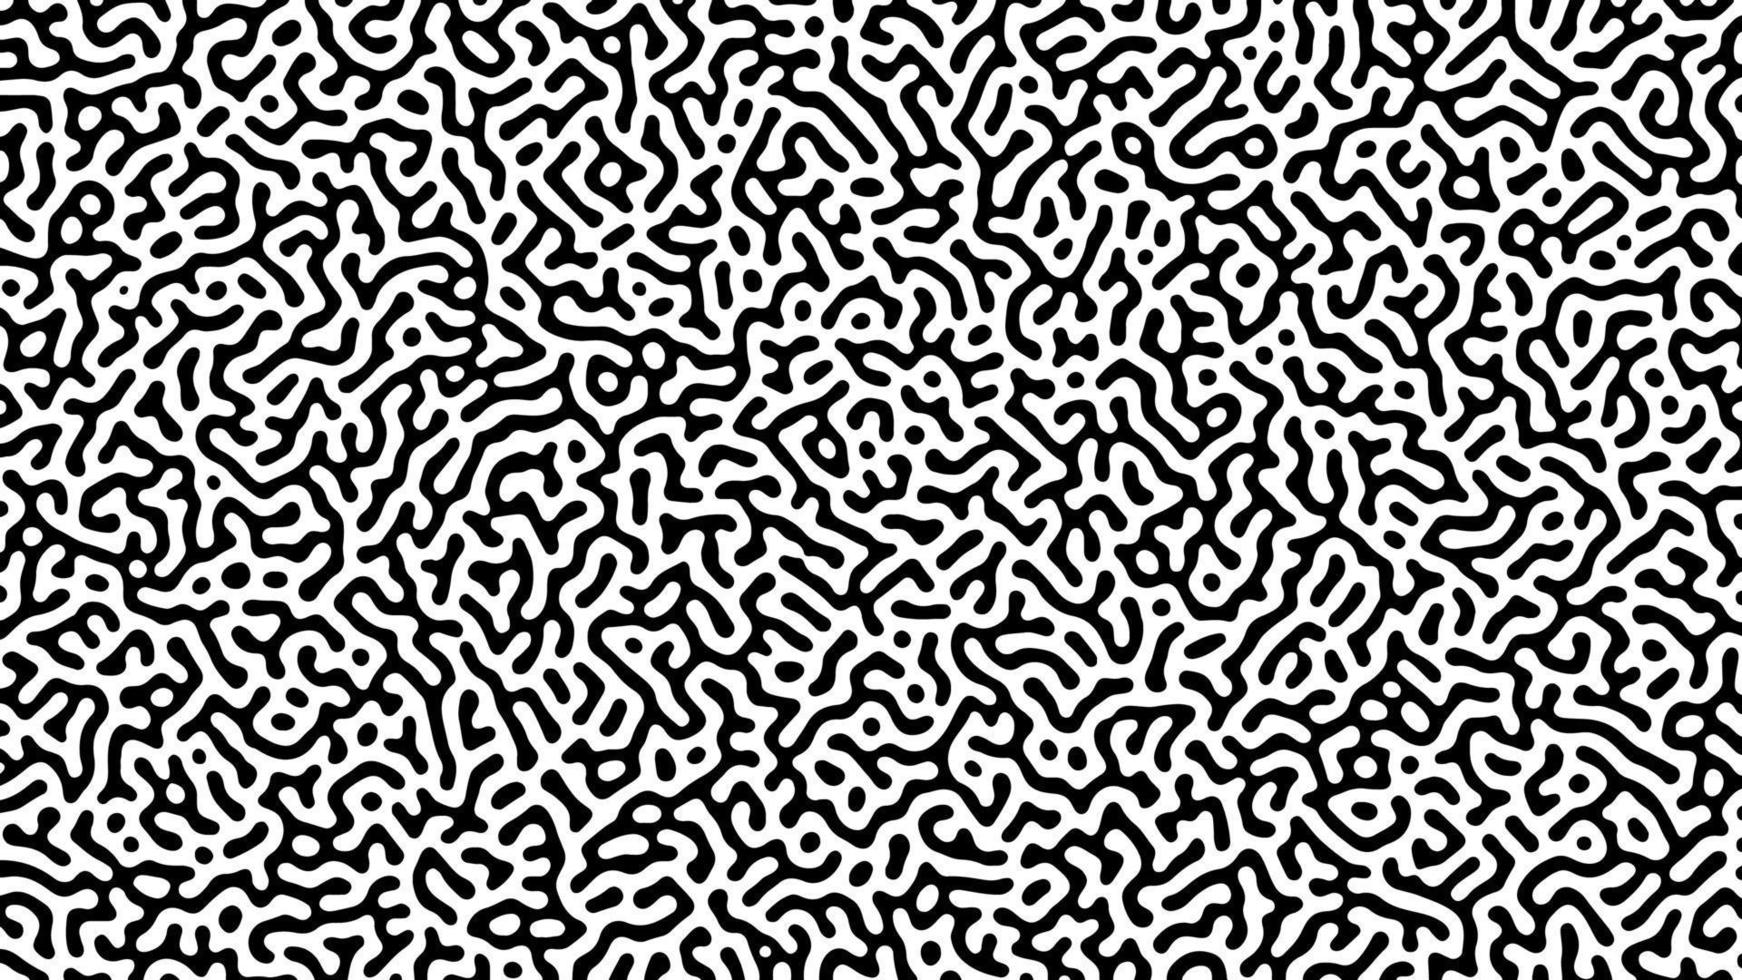 einfarbig turing Reaktion Hintergrund. abstrakt Diffusion Muster mit chaotisch Formen. Vektor Illustration.